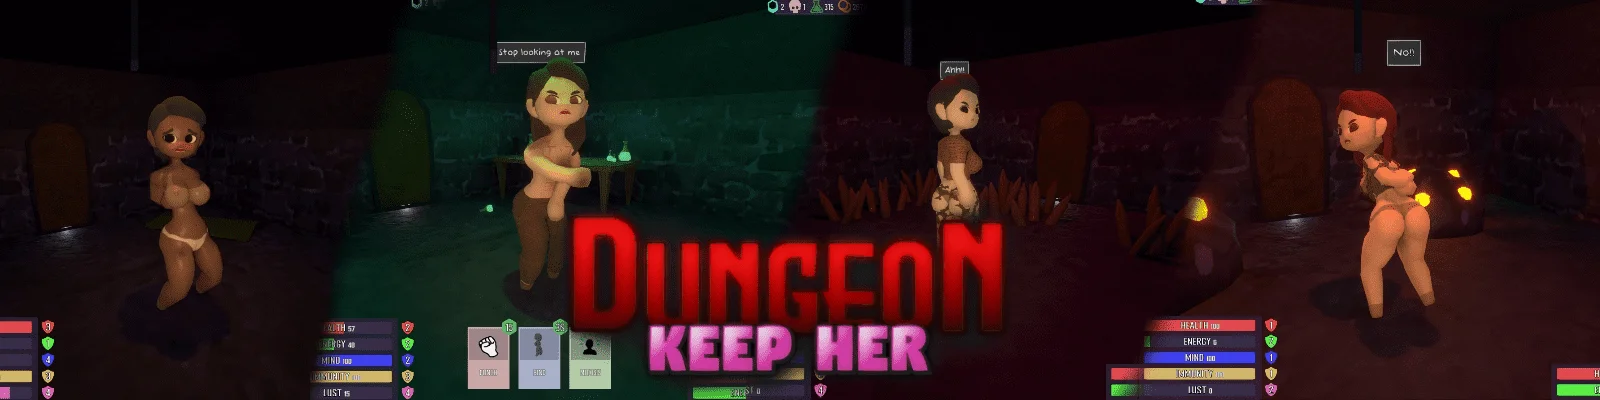 keepherdev - Dungeon: Keep Her - Version 0.7